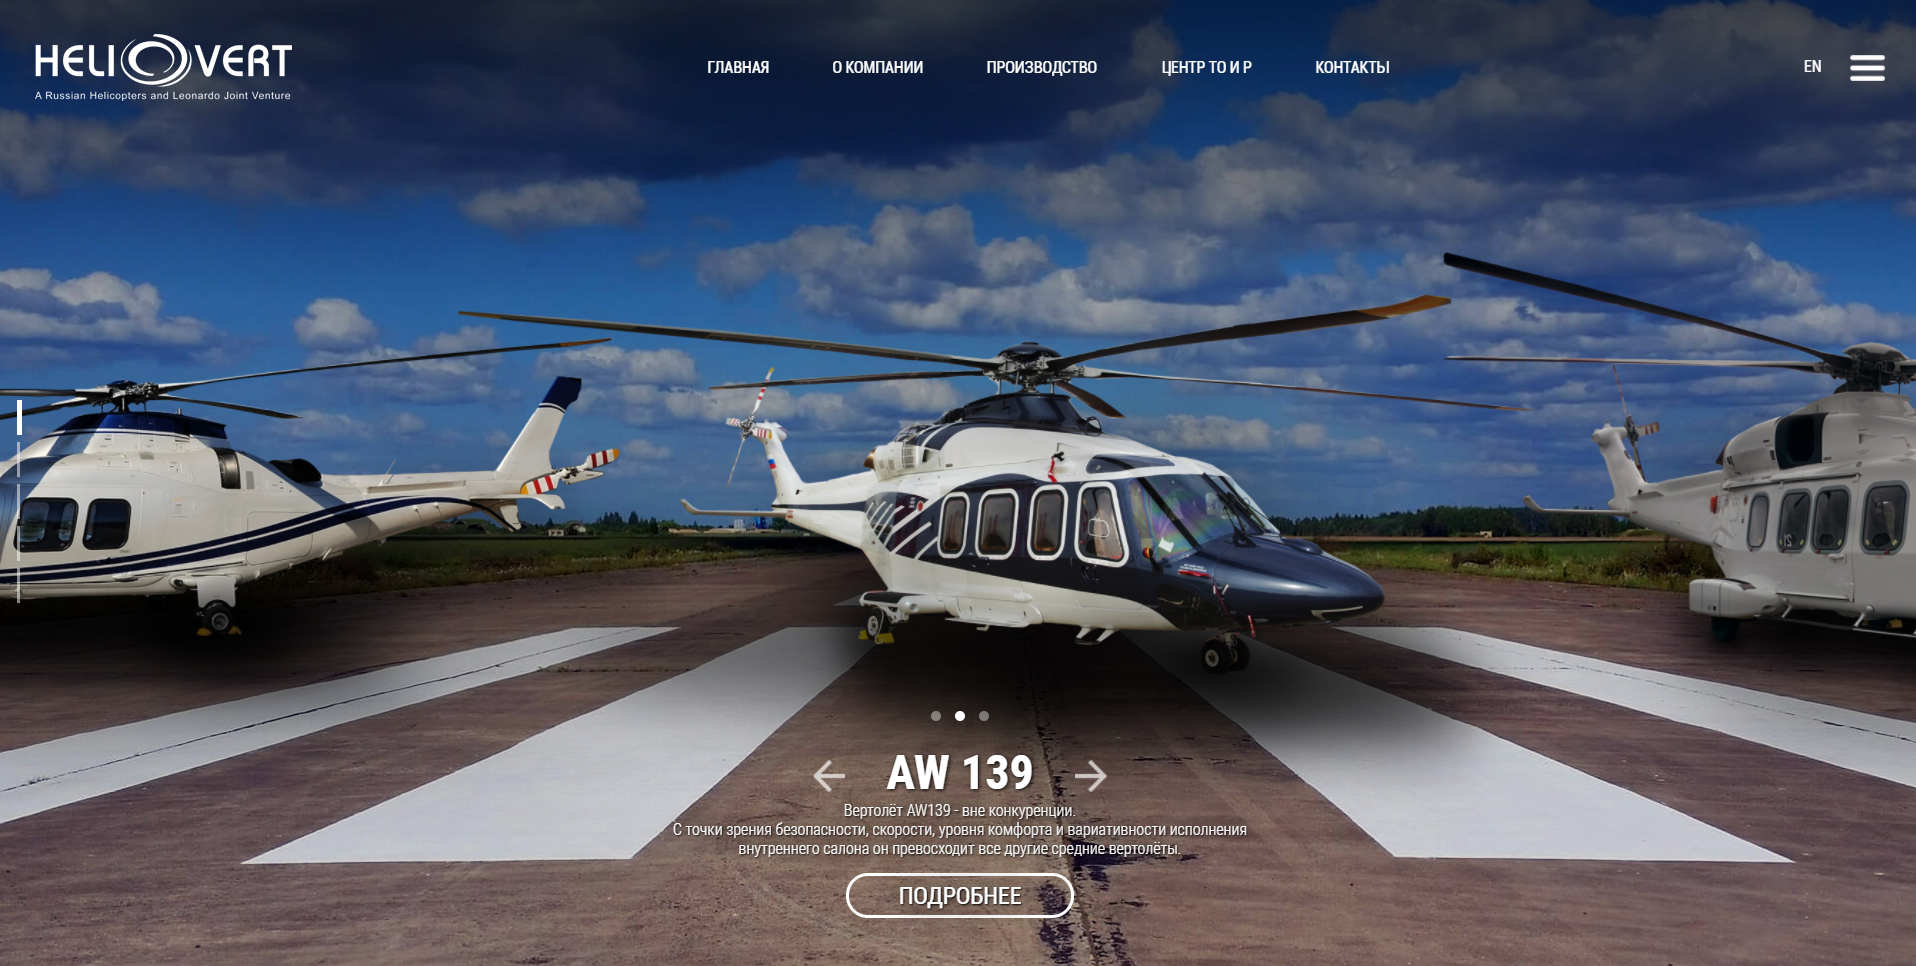 зао «хеливерт» - совместное предприятие ао «вертолеты россии» и компании «leonardo s.p.a helicopter division»